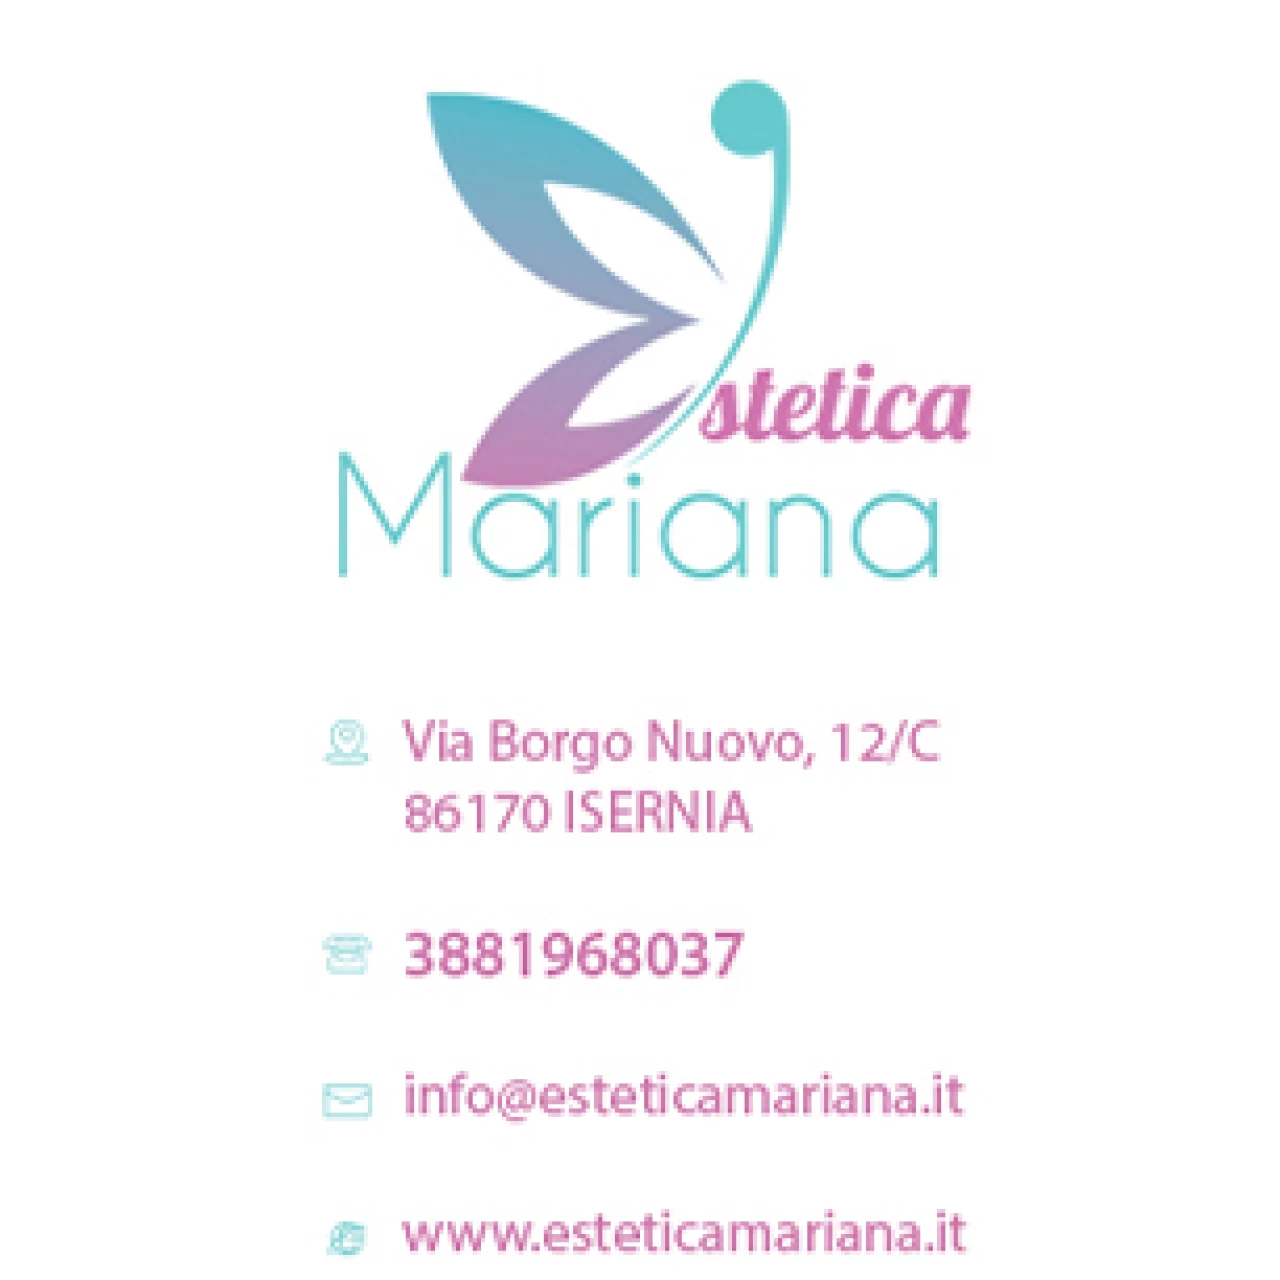 Banner Estetica Mariana 306 per 306 pixel